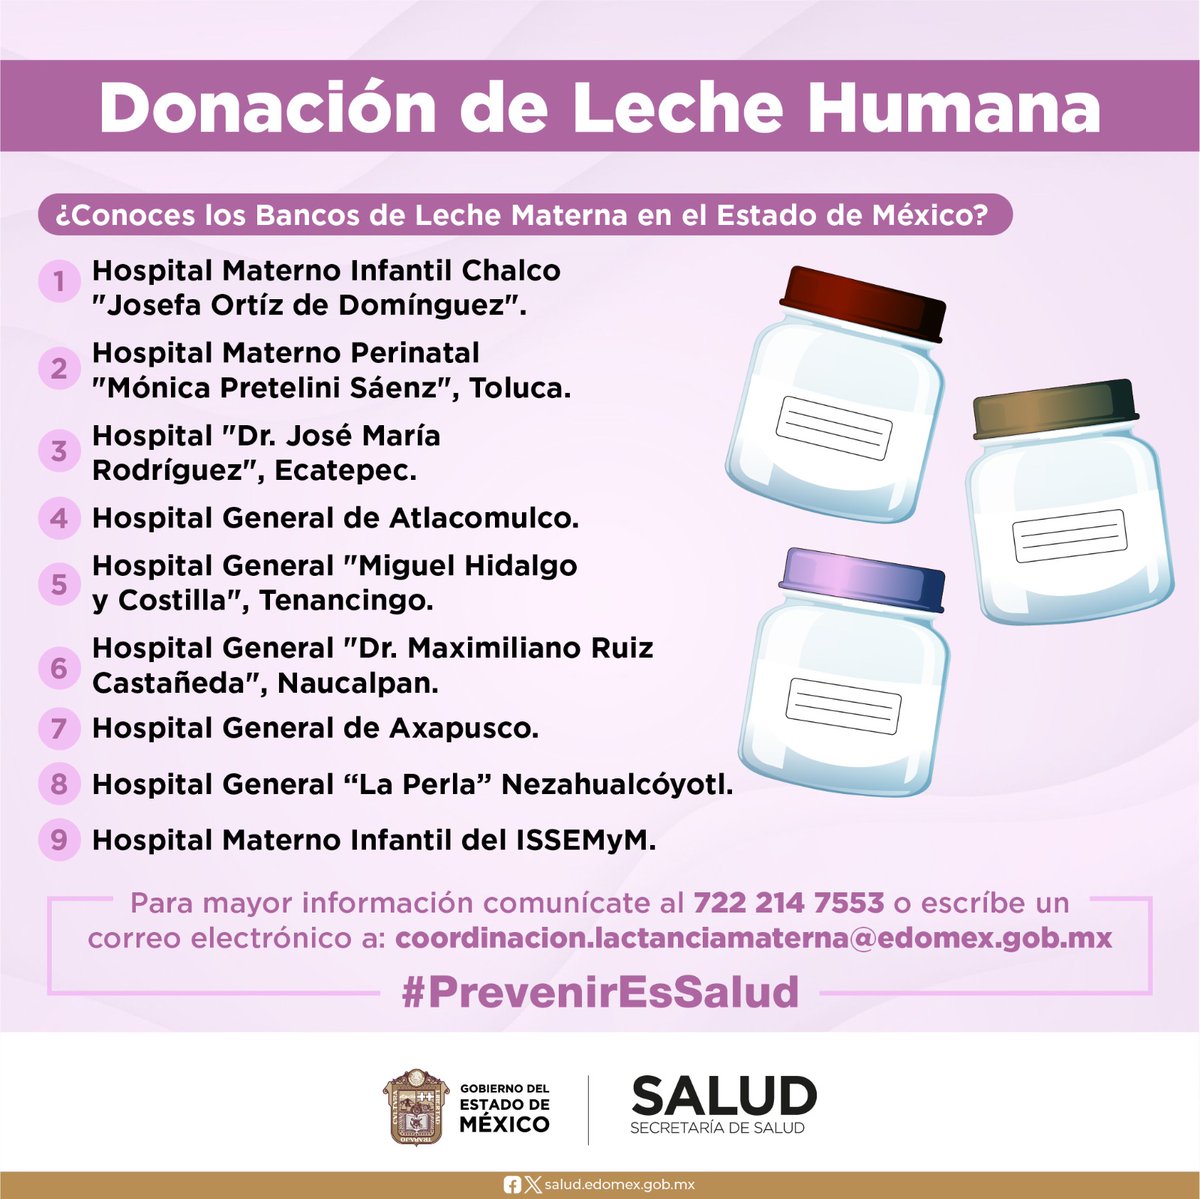 En el Estado de México se encuentran ubicados nueve Bancos de Leche Materna, espacios destinados a su procesamiento, almacenaje y distribución. ¡Ubícalos!